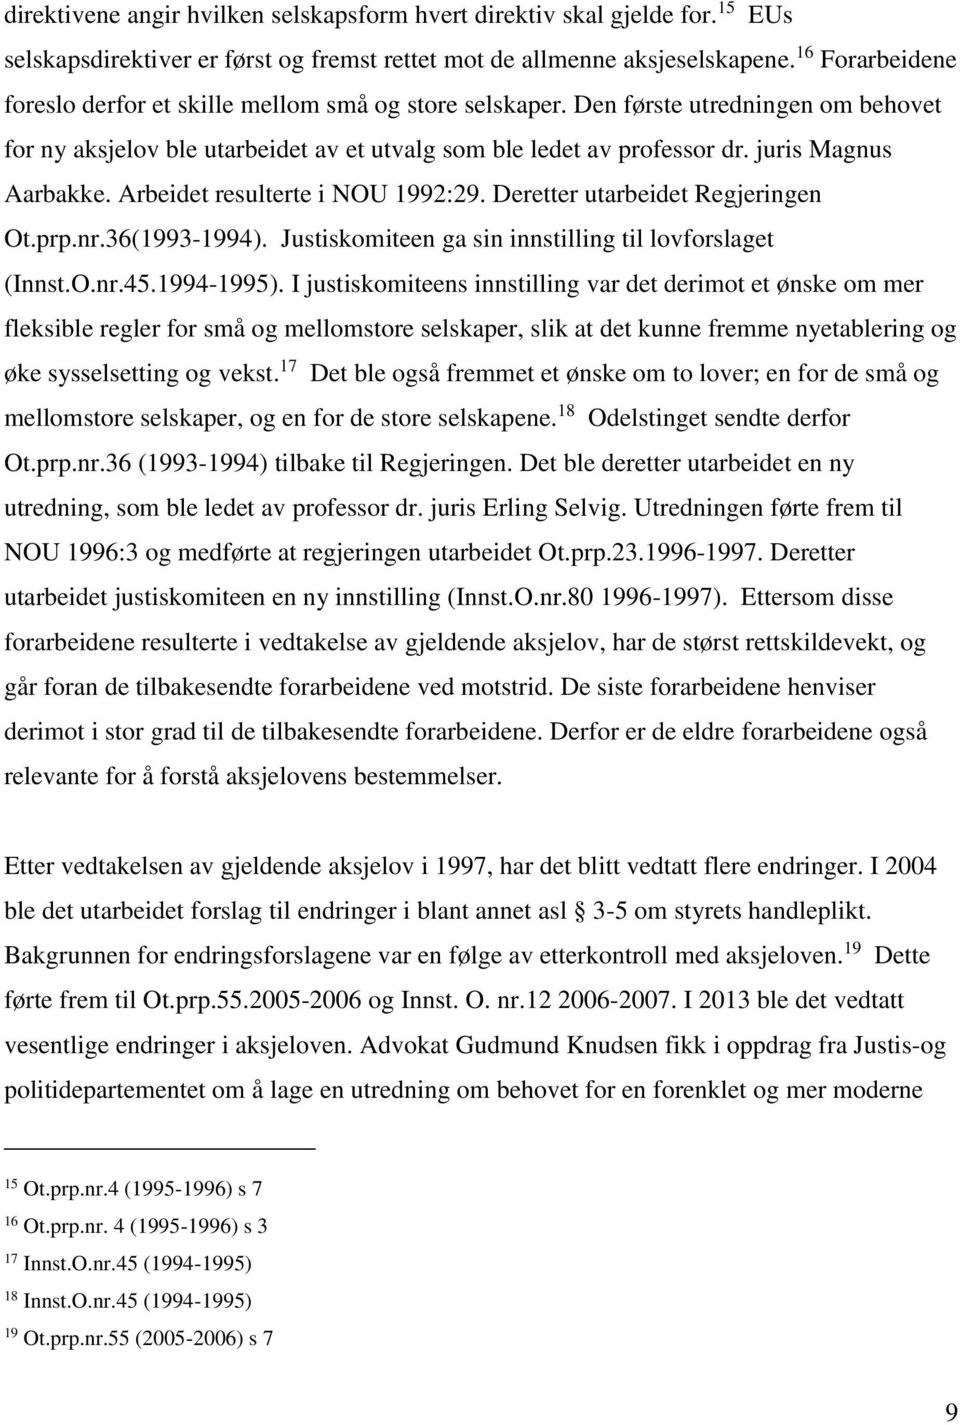 juris Magnus Aarbakke. Arbeidet resulterte i NOU 1992:29. Deretter utarbeidet Regjeringen Ot.prp.nr.36(1993-1994). Justiskomiteen ga sin innstilling til lovforslaget (Innst.O.nr.45.1994-1995).